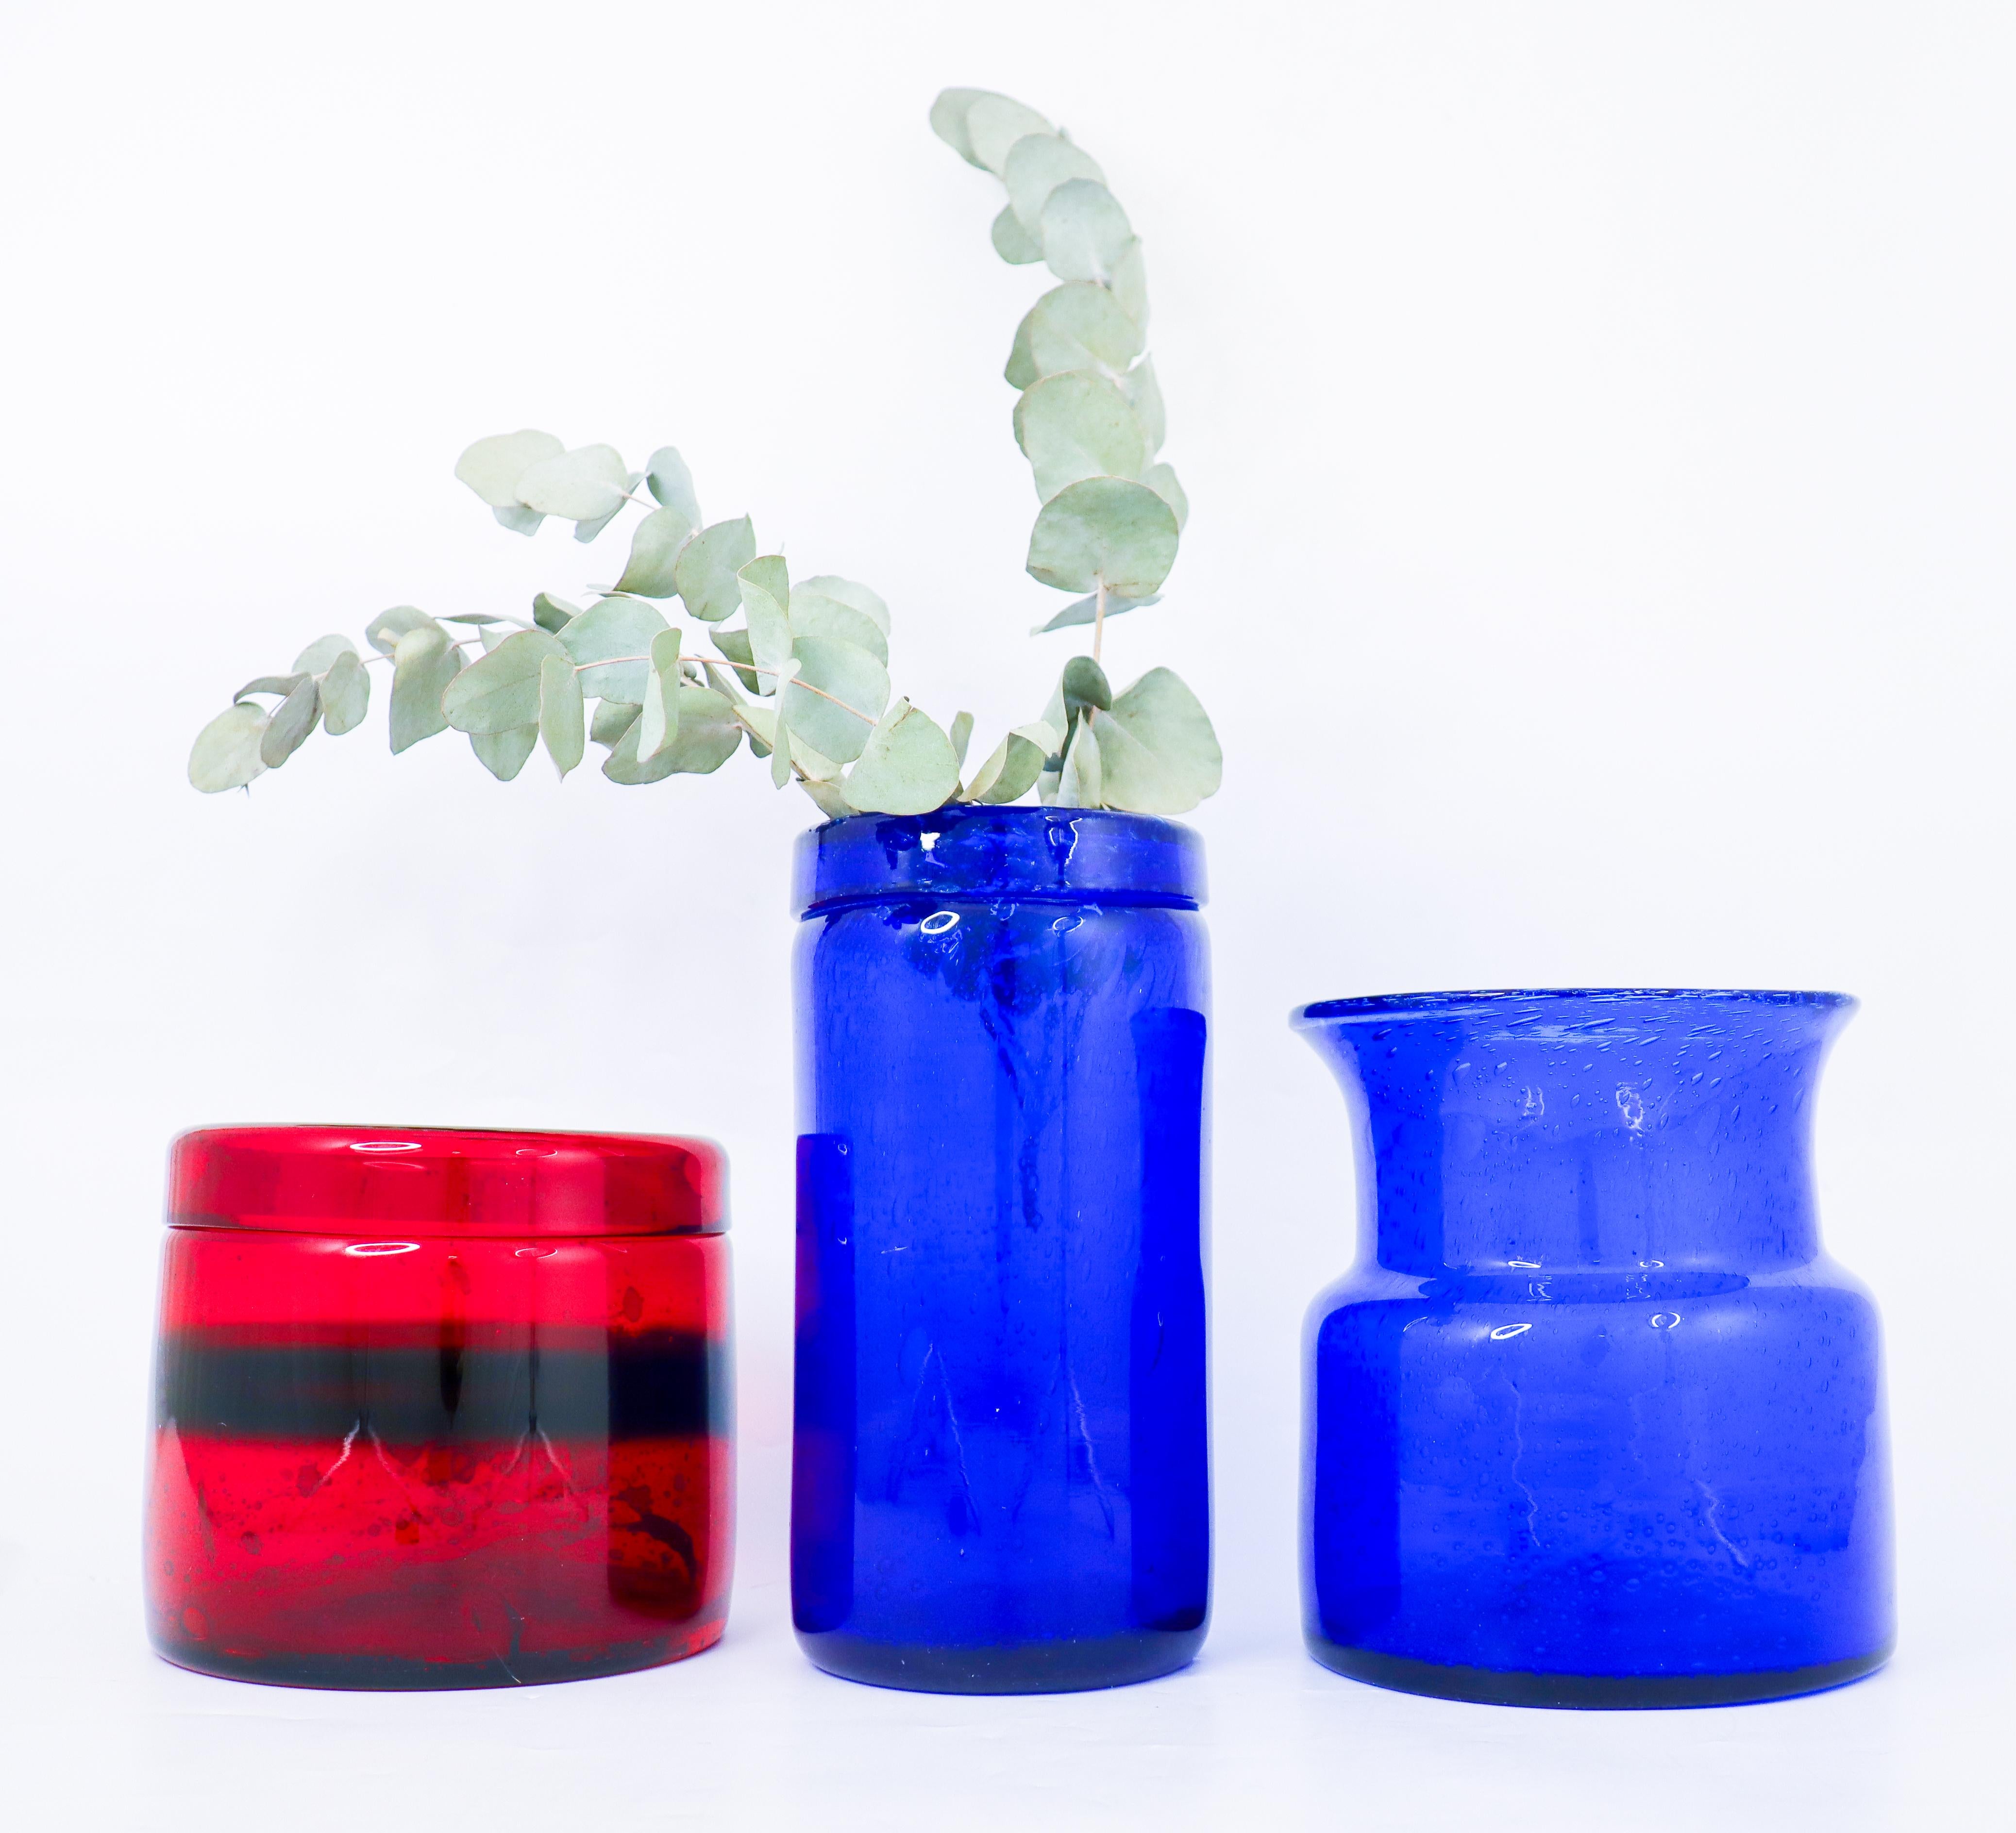 3 Red & Blue Glass Vases - Boda Sweden - Erik Höglund - 1960s Midcentury Modern For Sale 1